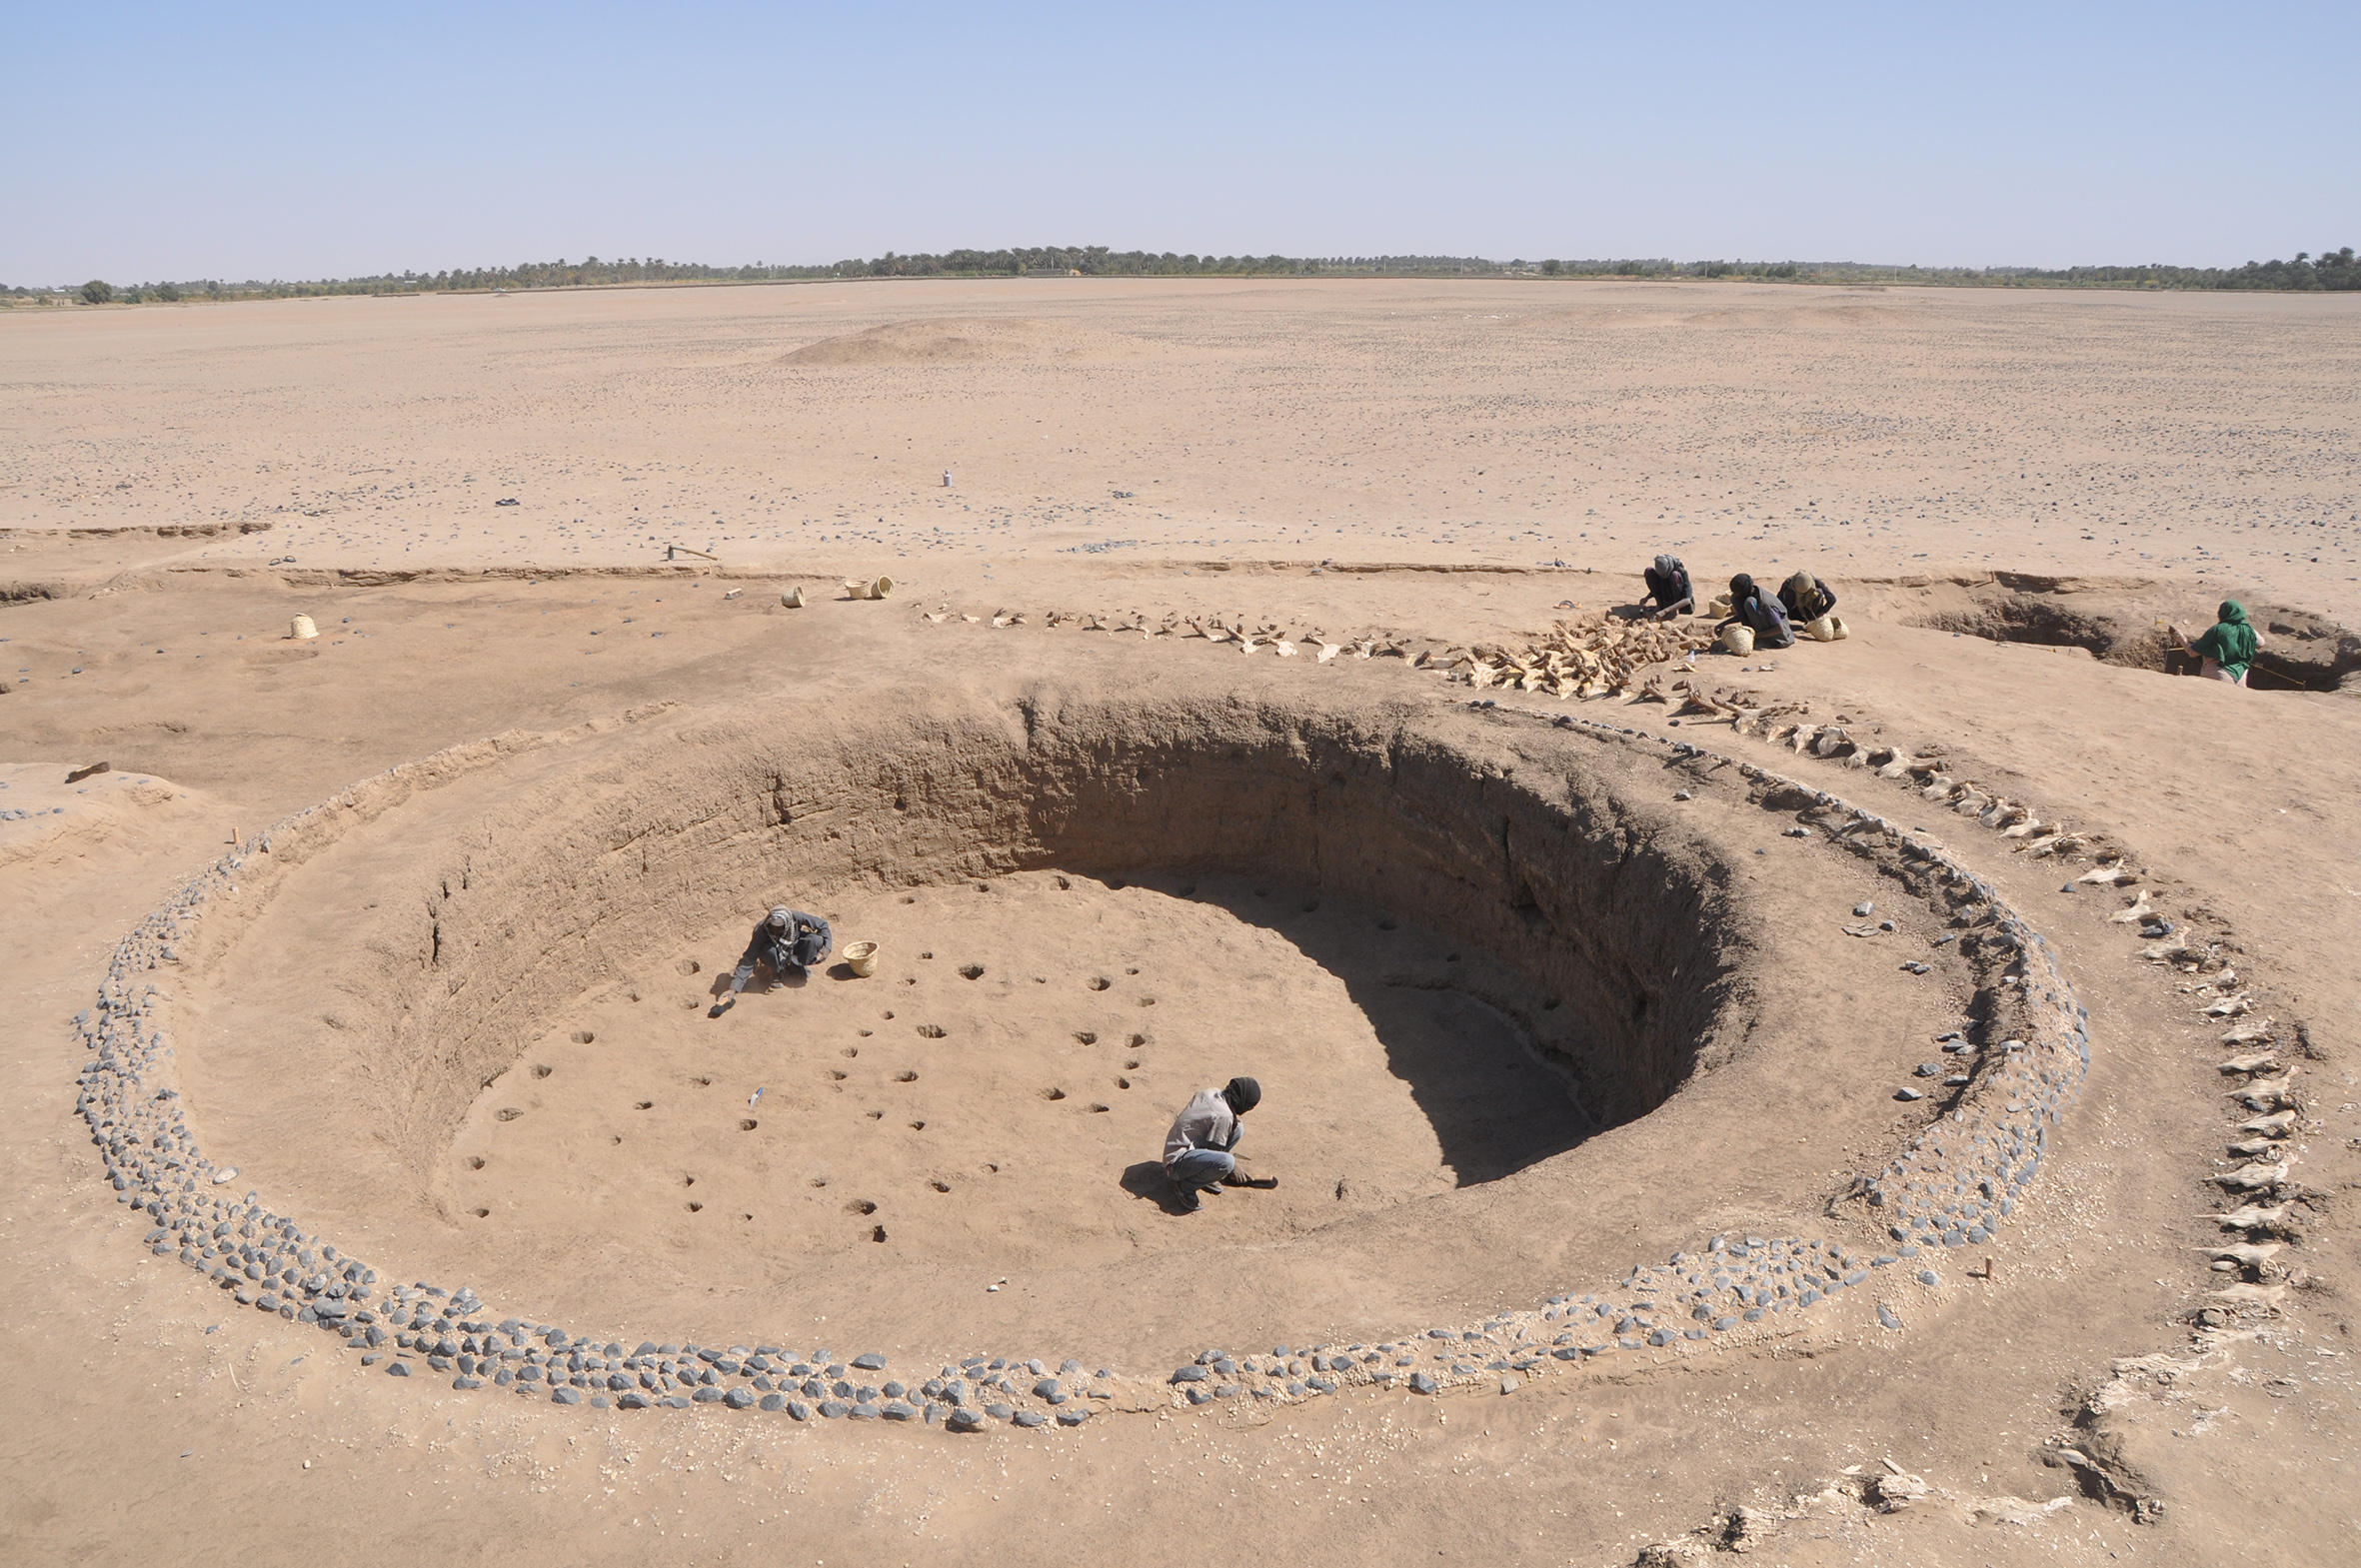 حفرة كبيرة يعتقد أنّها مقبرة في الصحراء وفيها رجال آثار